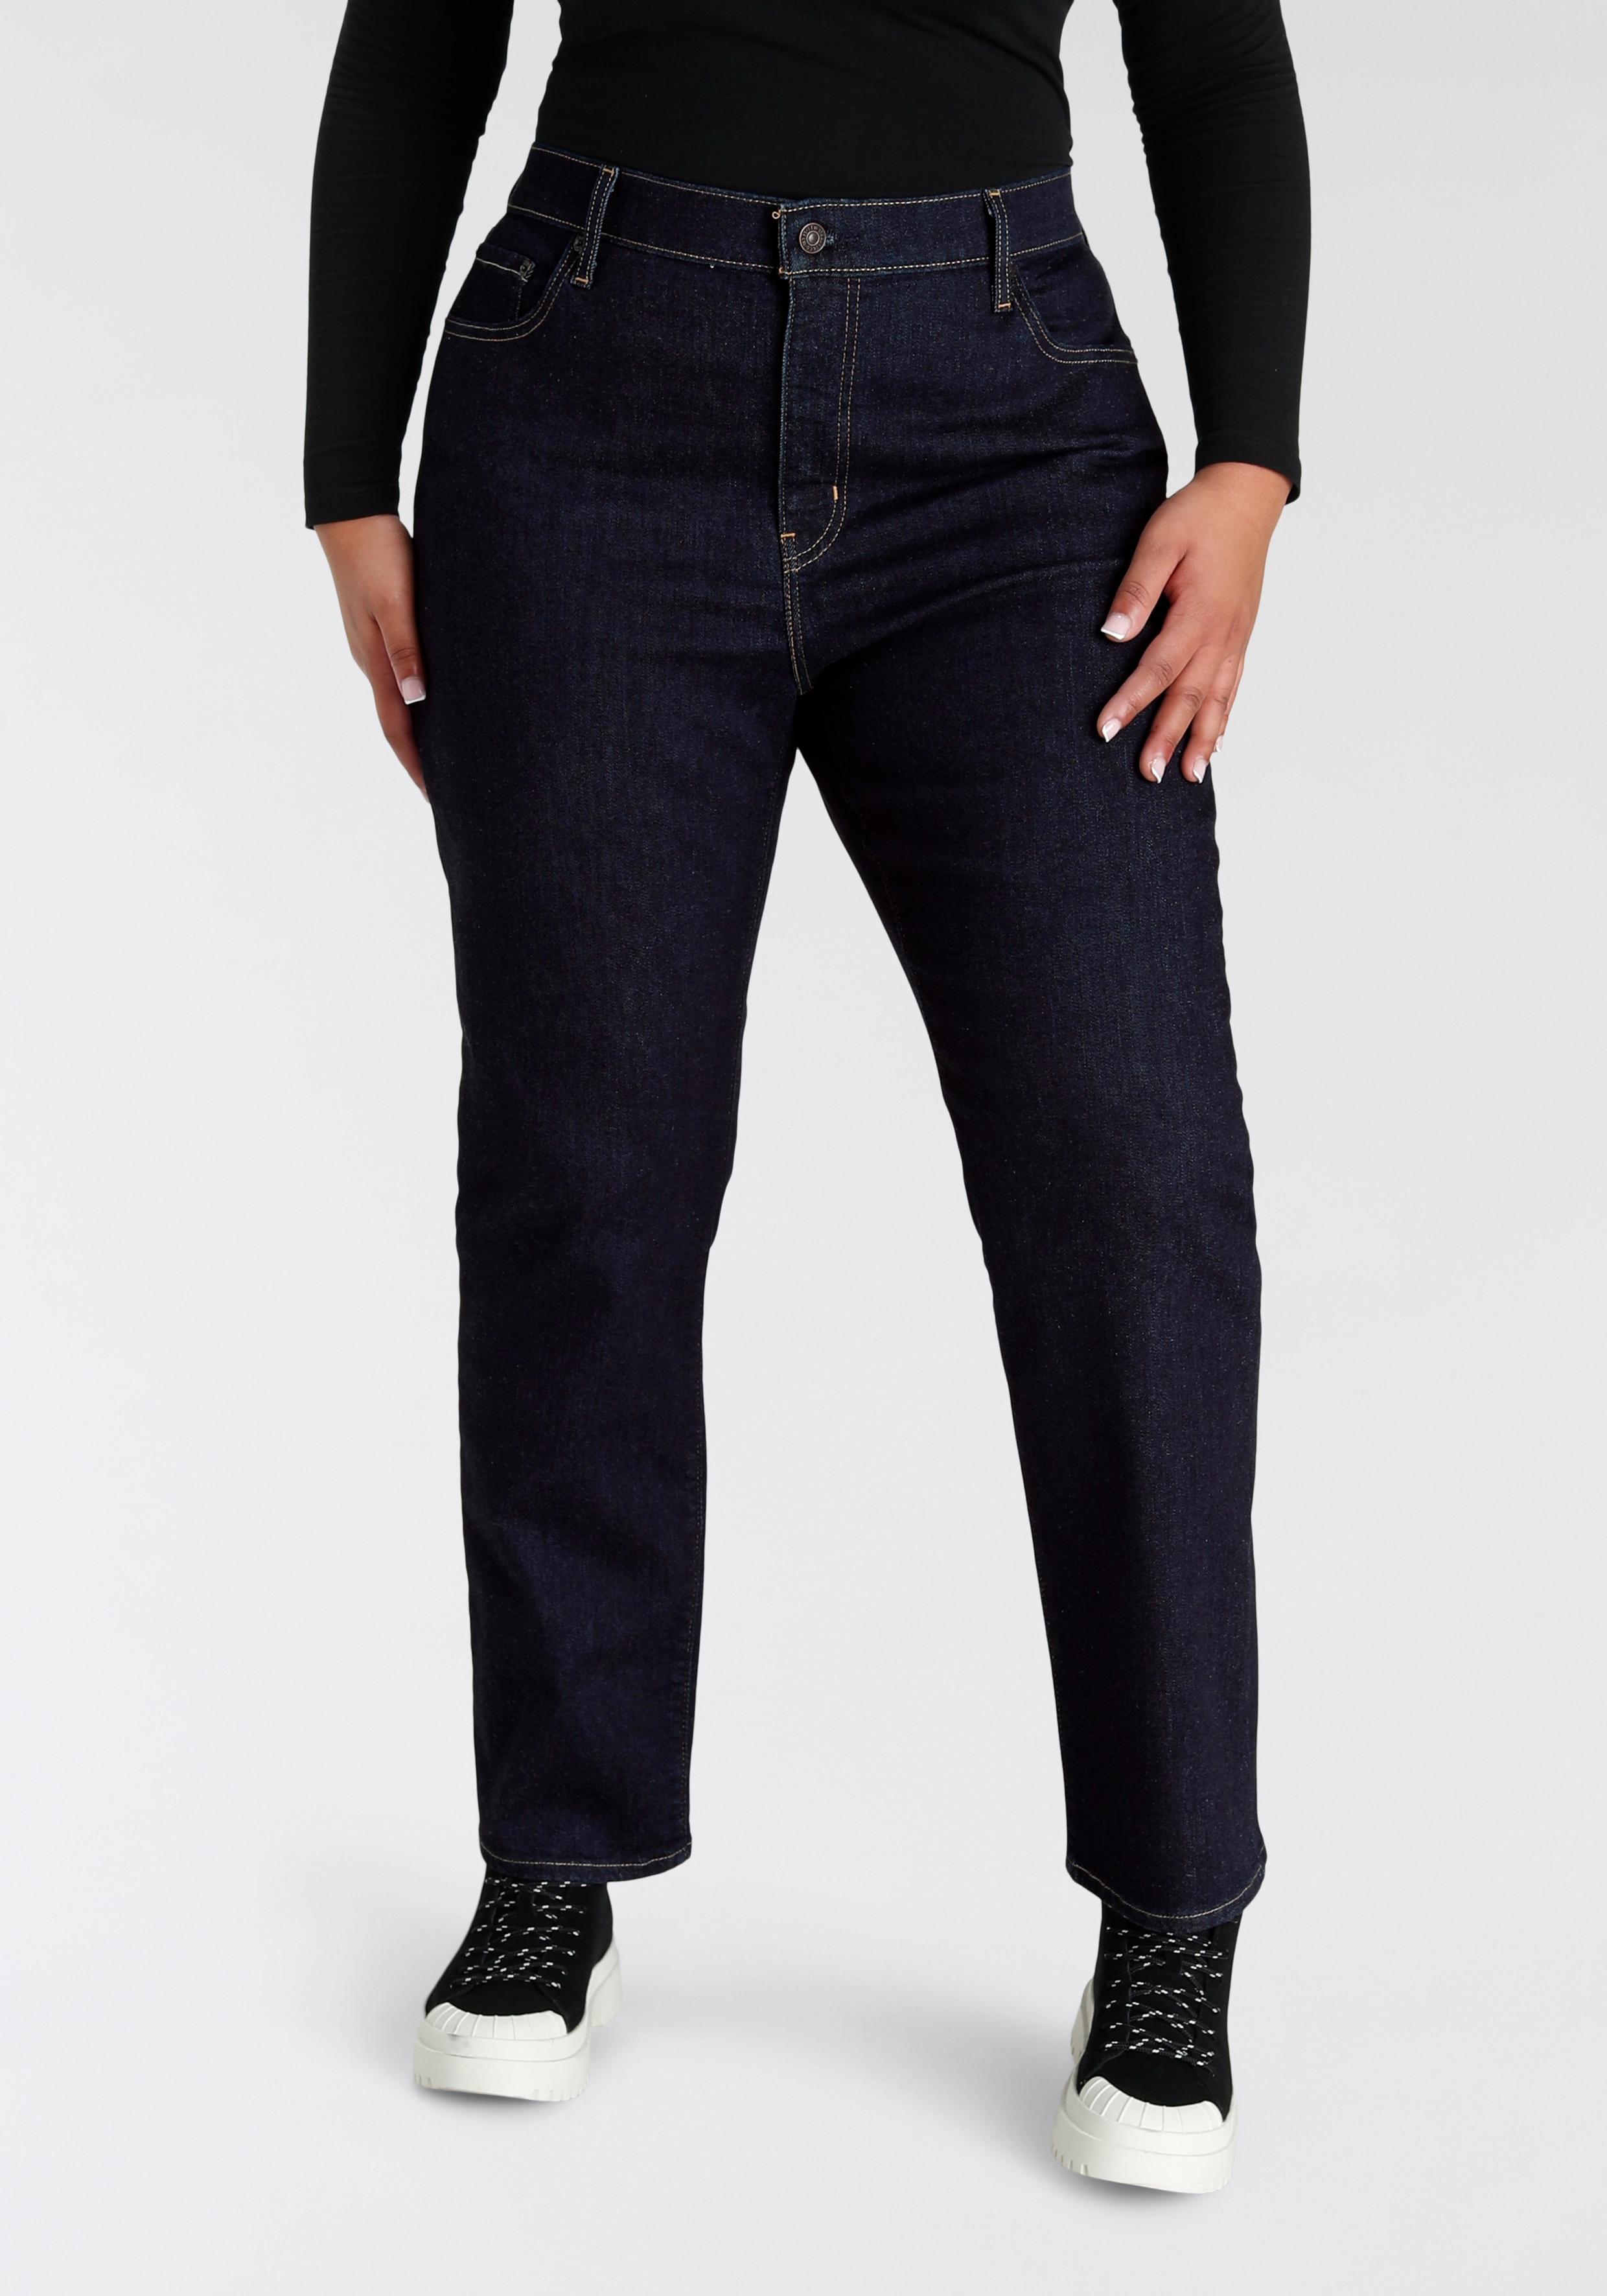 Straight-Jeans LEVI'S PLUS "724 PL HR STRAIGHT" Gr. 14 (44), Länge 32, schwarz (dark rinse) Damen Jeans Gerade